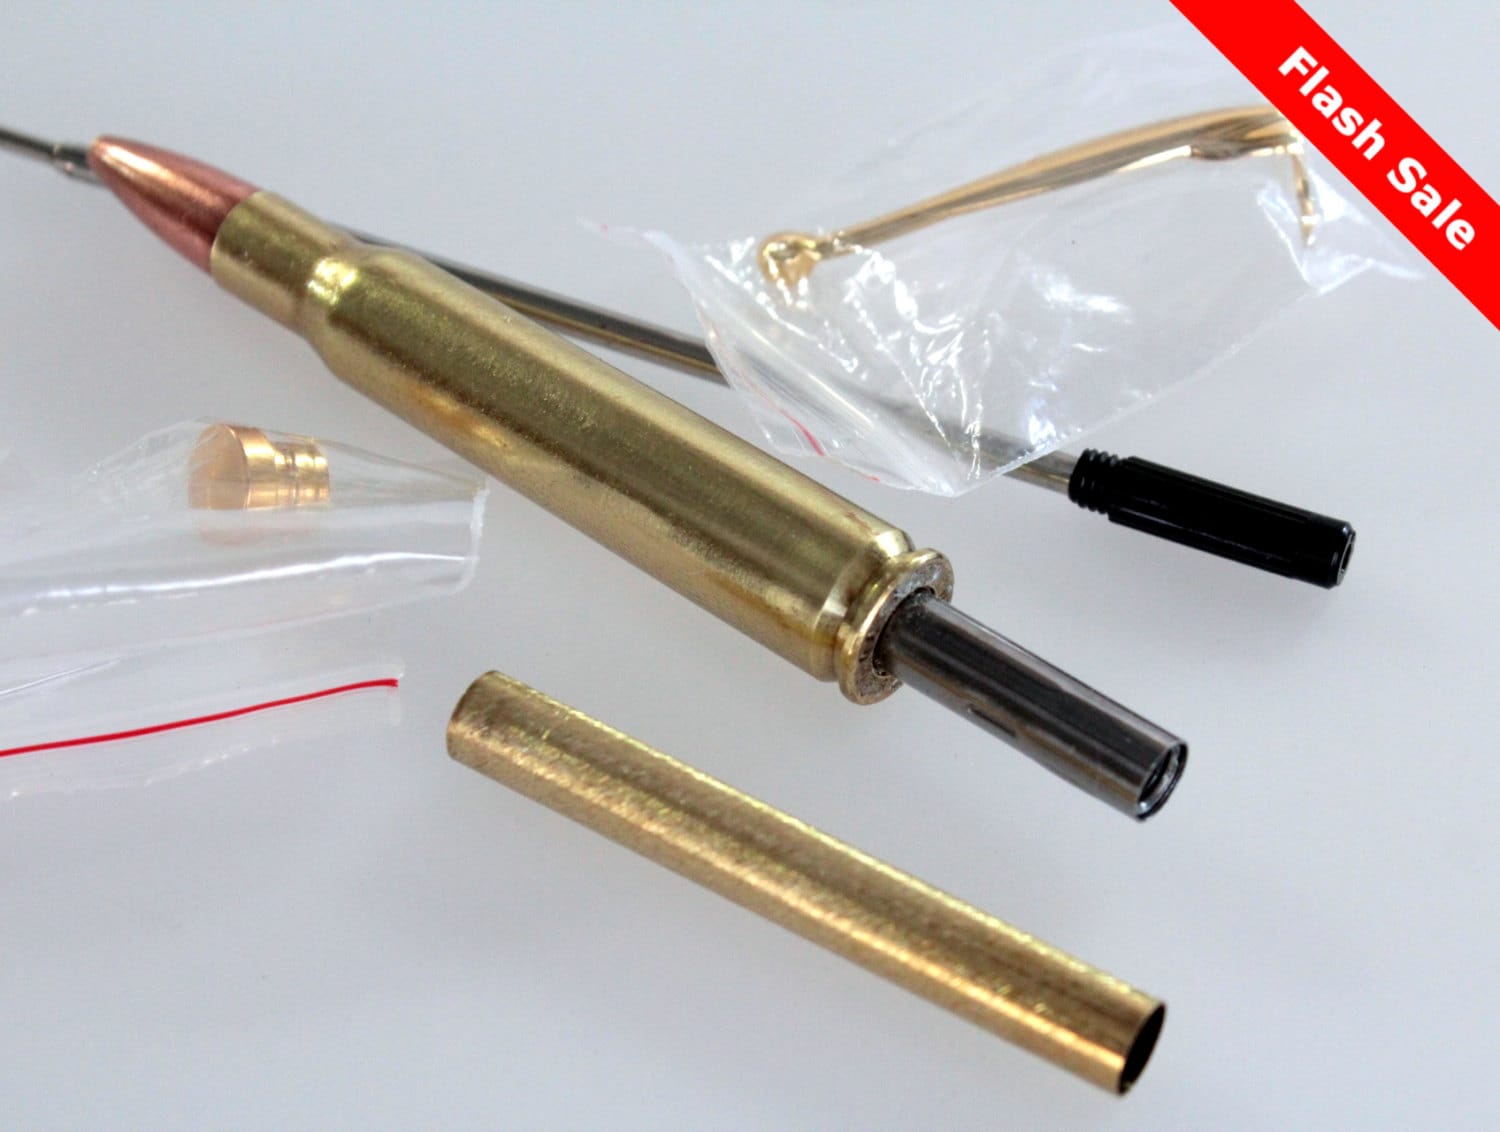 Pen Kit Rifle Cartridge Pen Kit 3006 Brass By Woodenquill